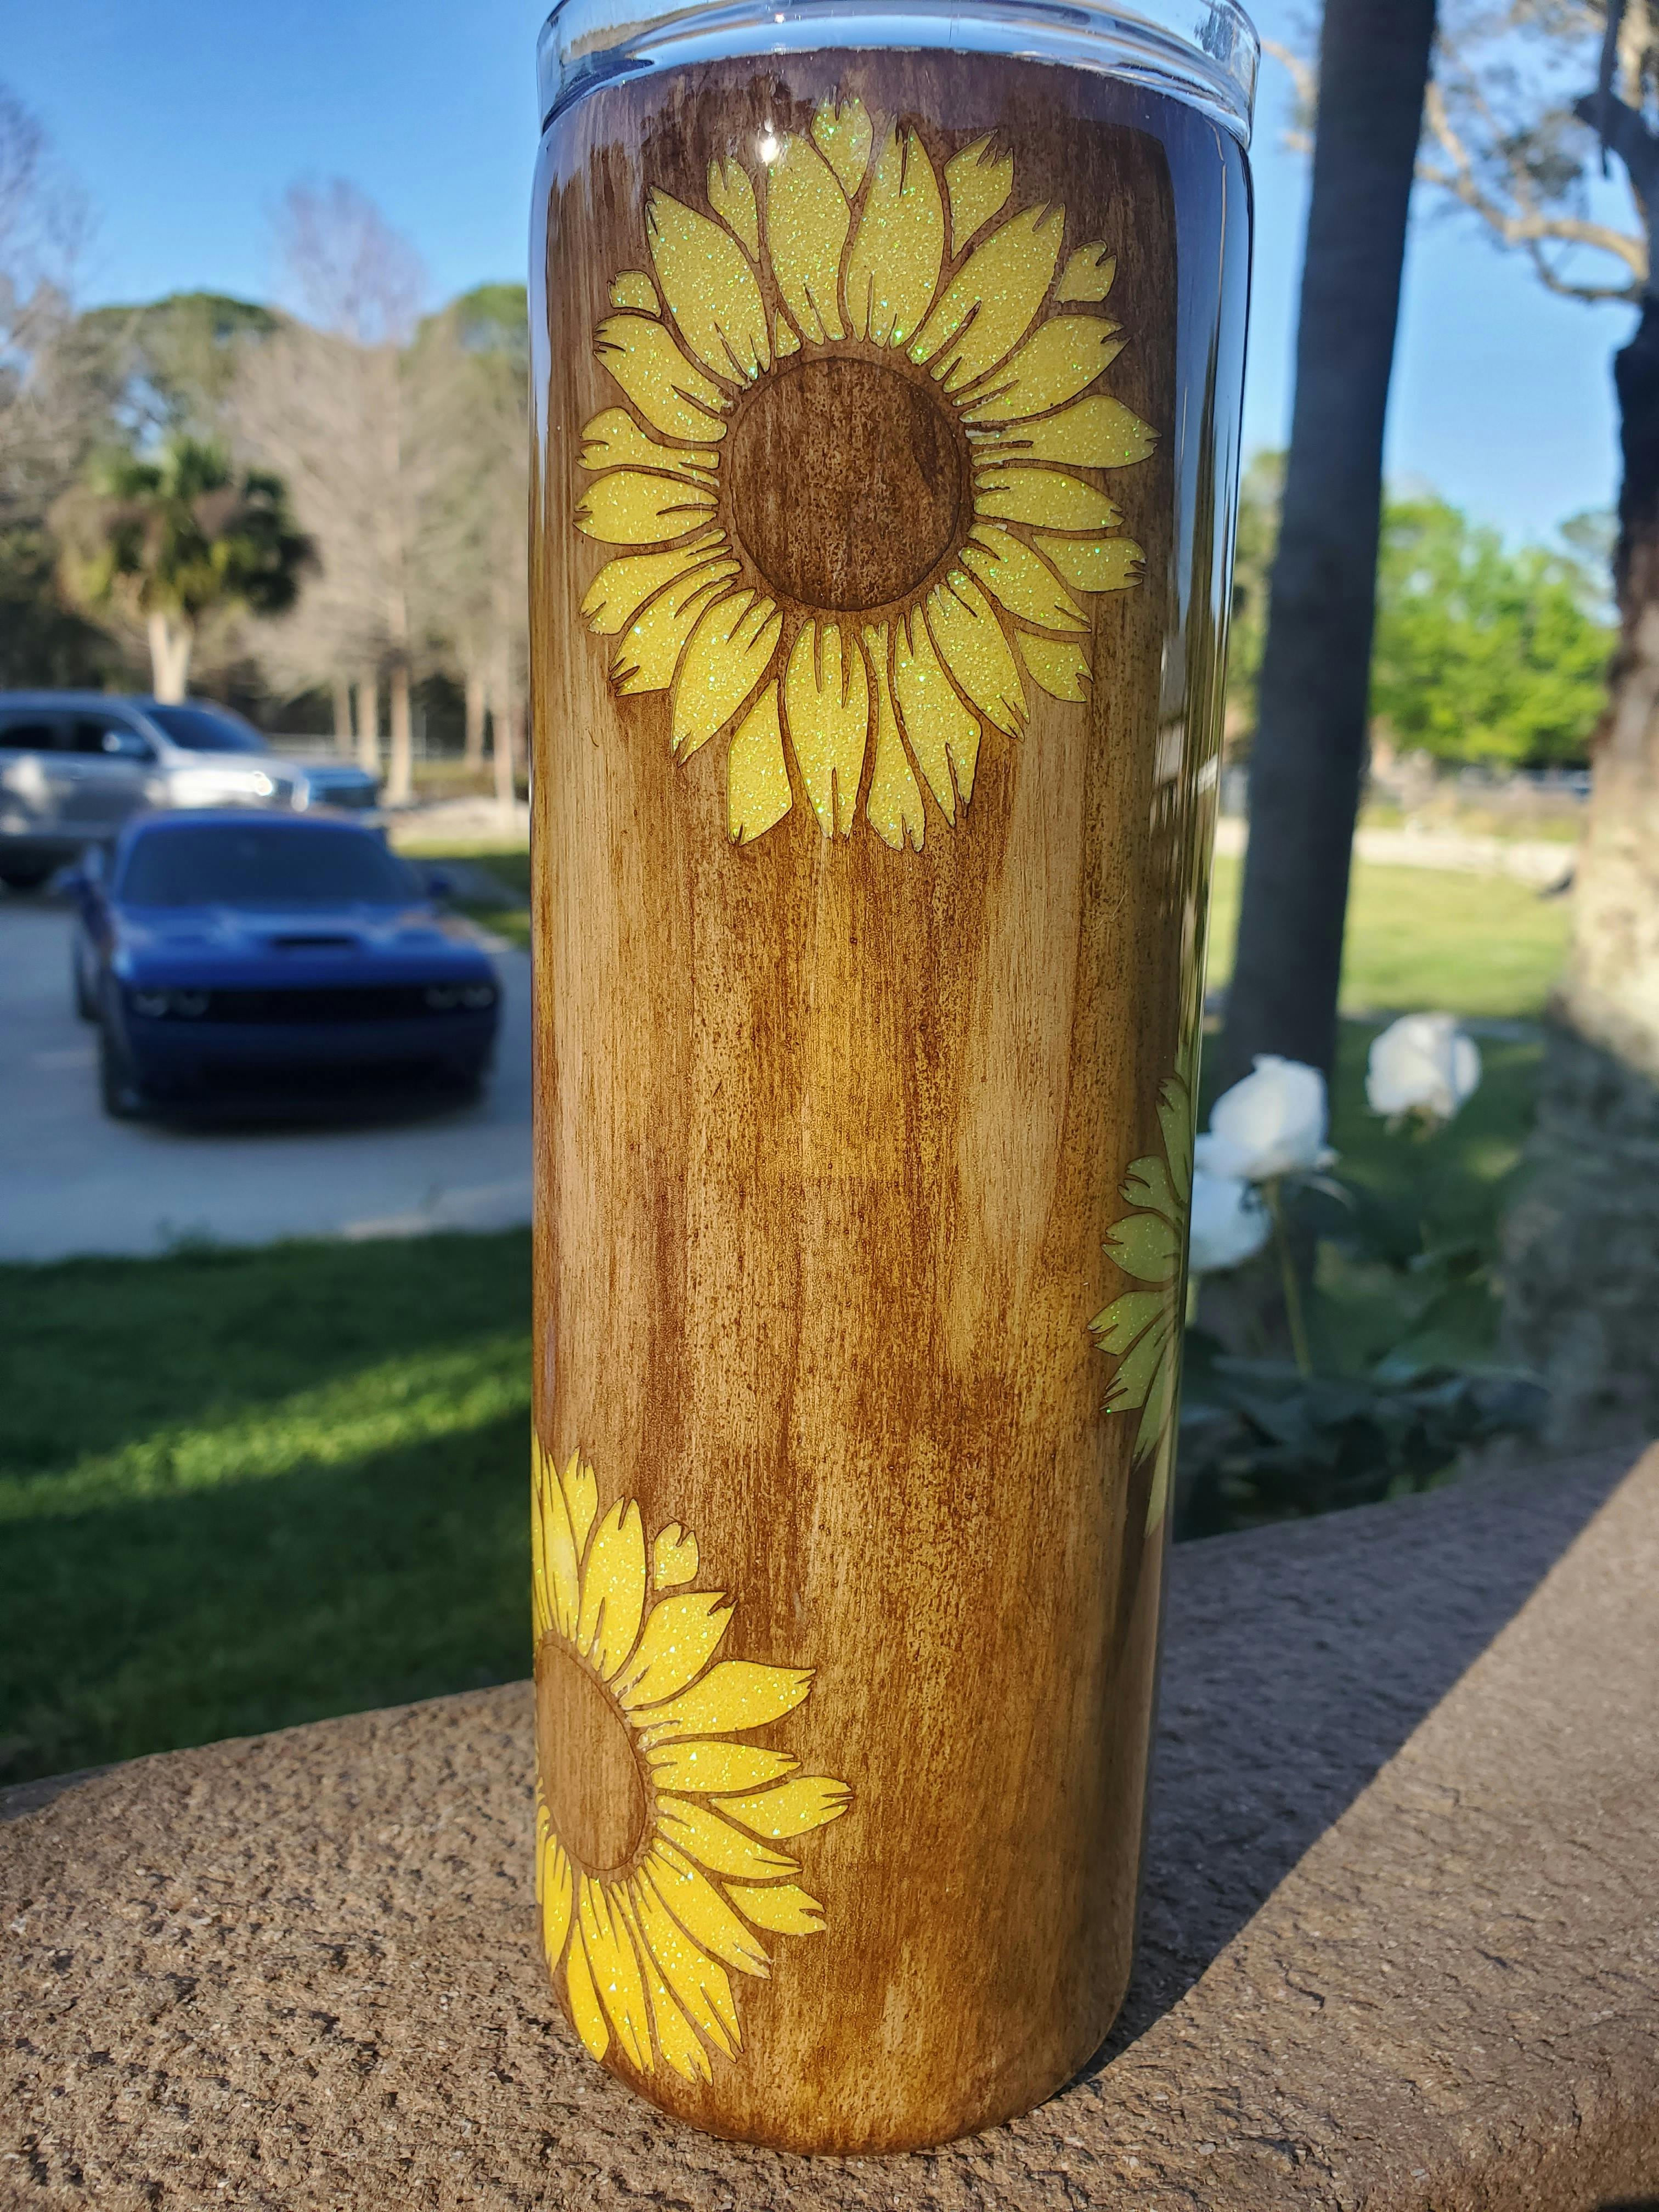 Woodgrain sunflowers